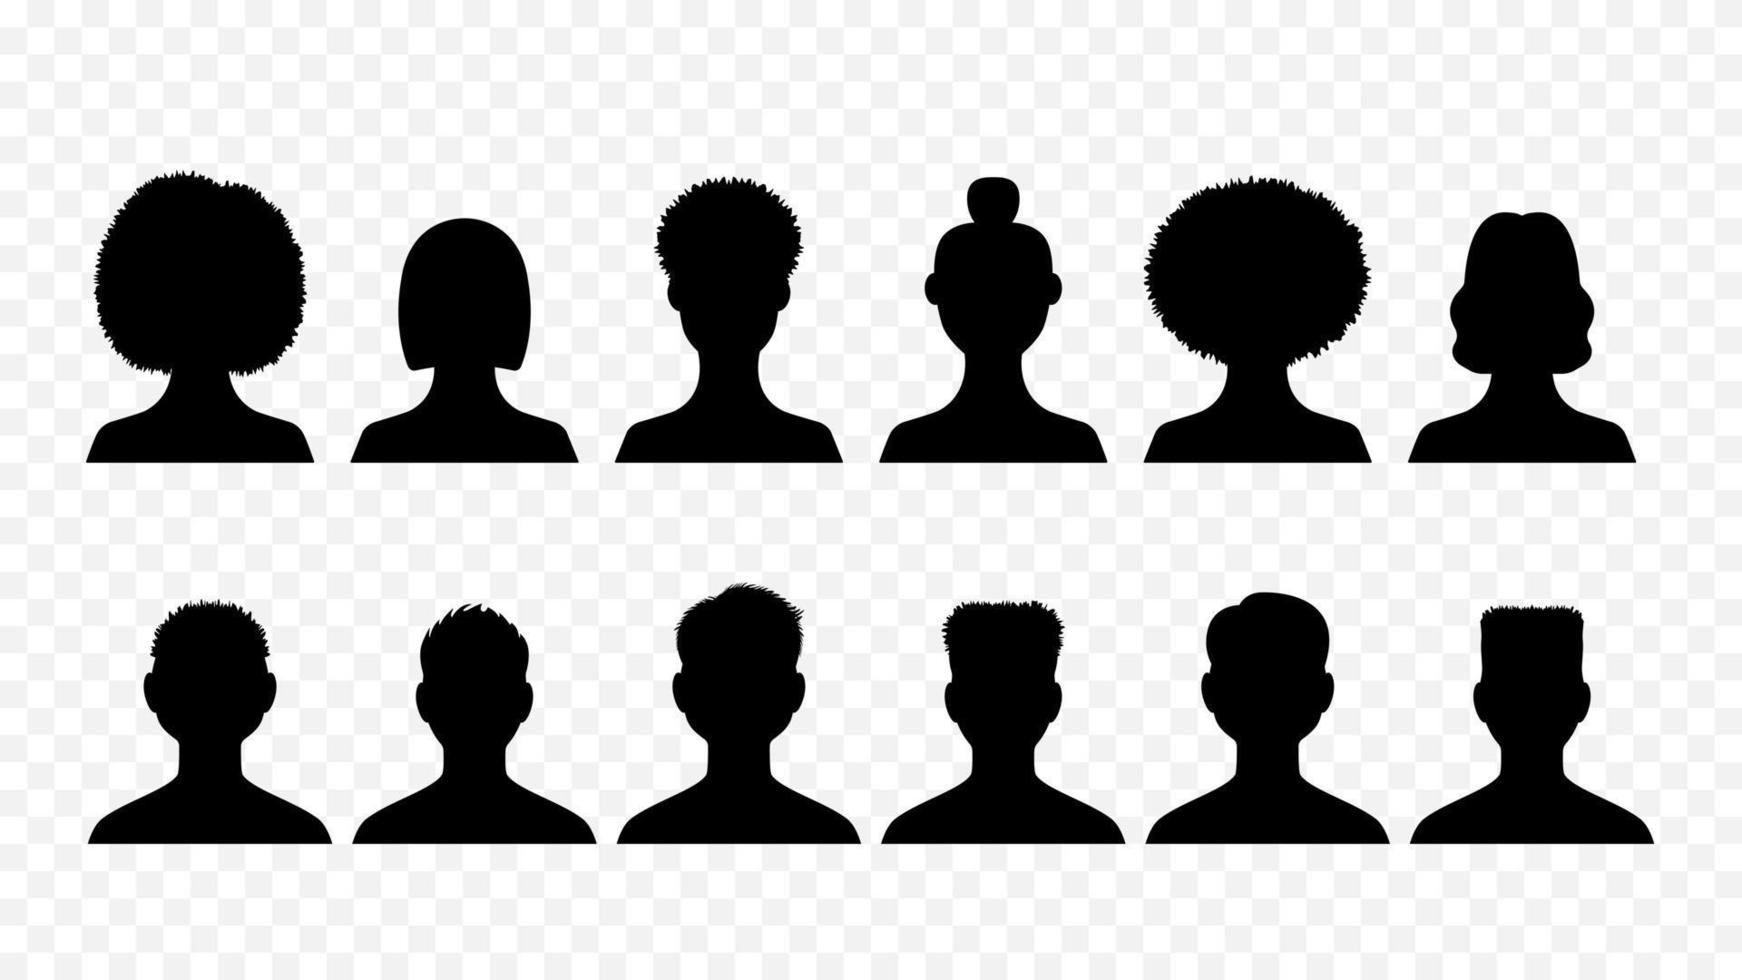 manliga och kvinnliga avatarer silhuetter isolerade uppsättning. svart skisserar unga människor med trendiga frisyrer från olika etniska grupper för användares sociala nätverk och webbvektorsajter vektor